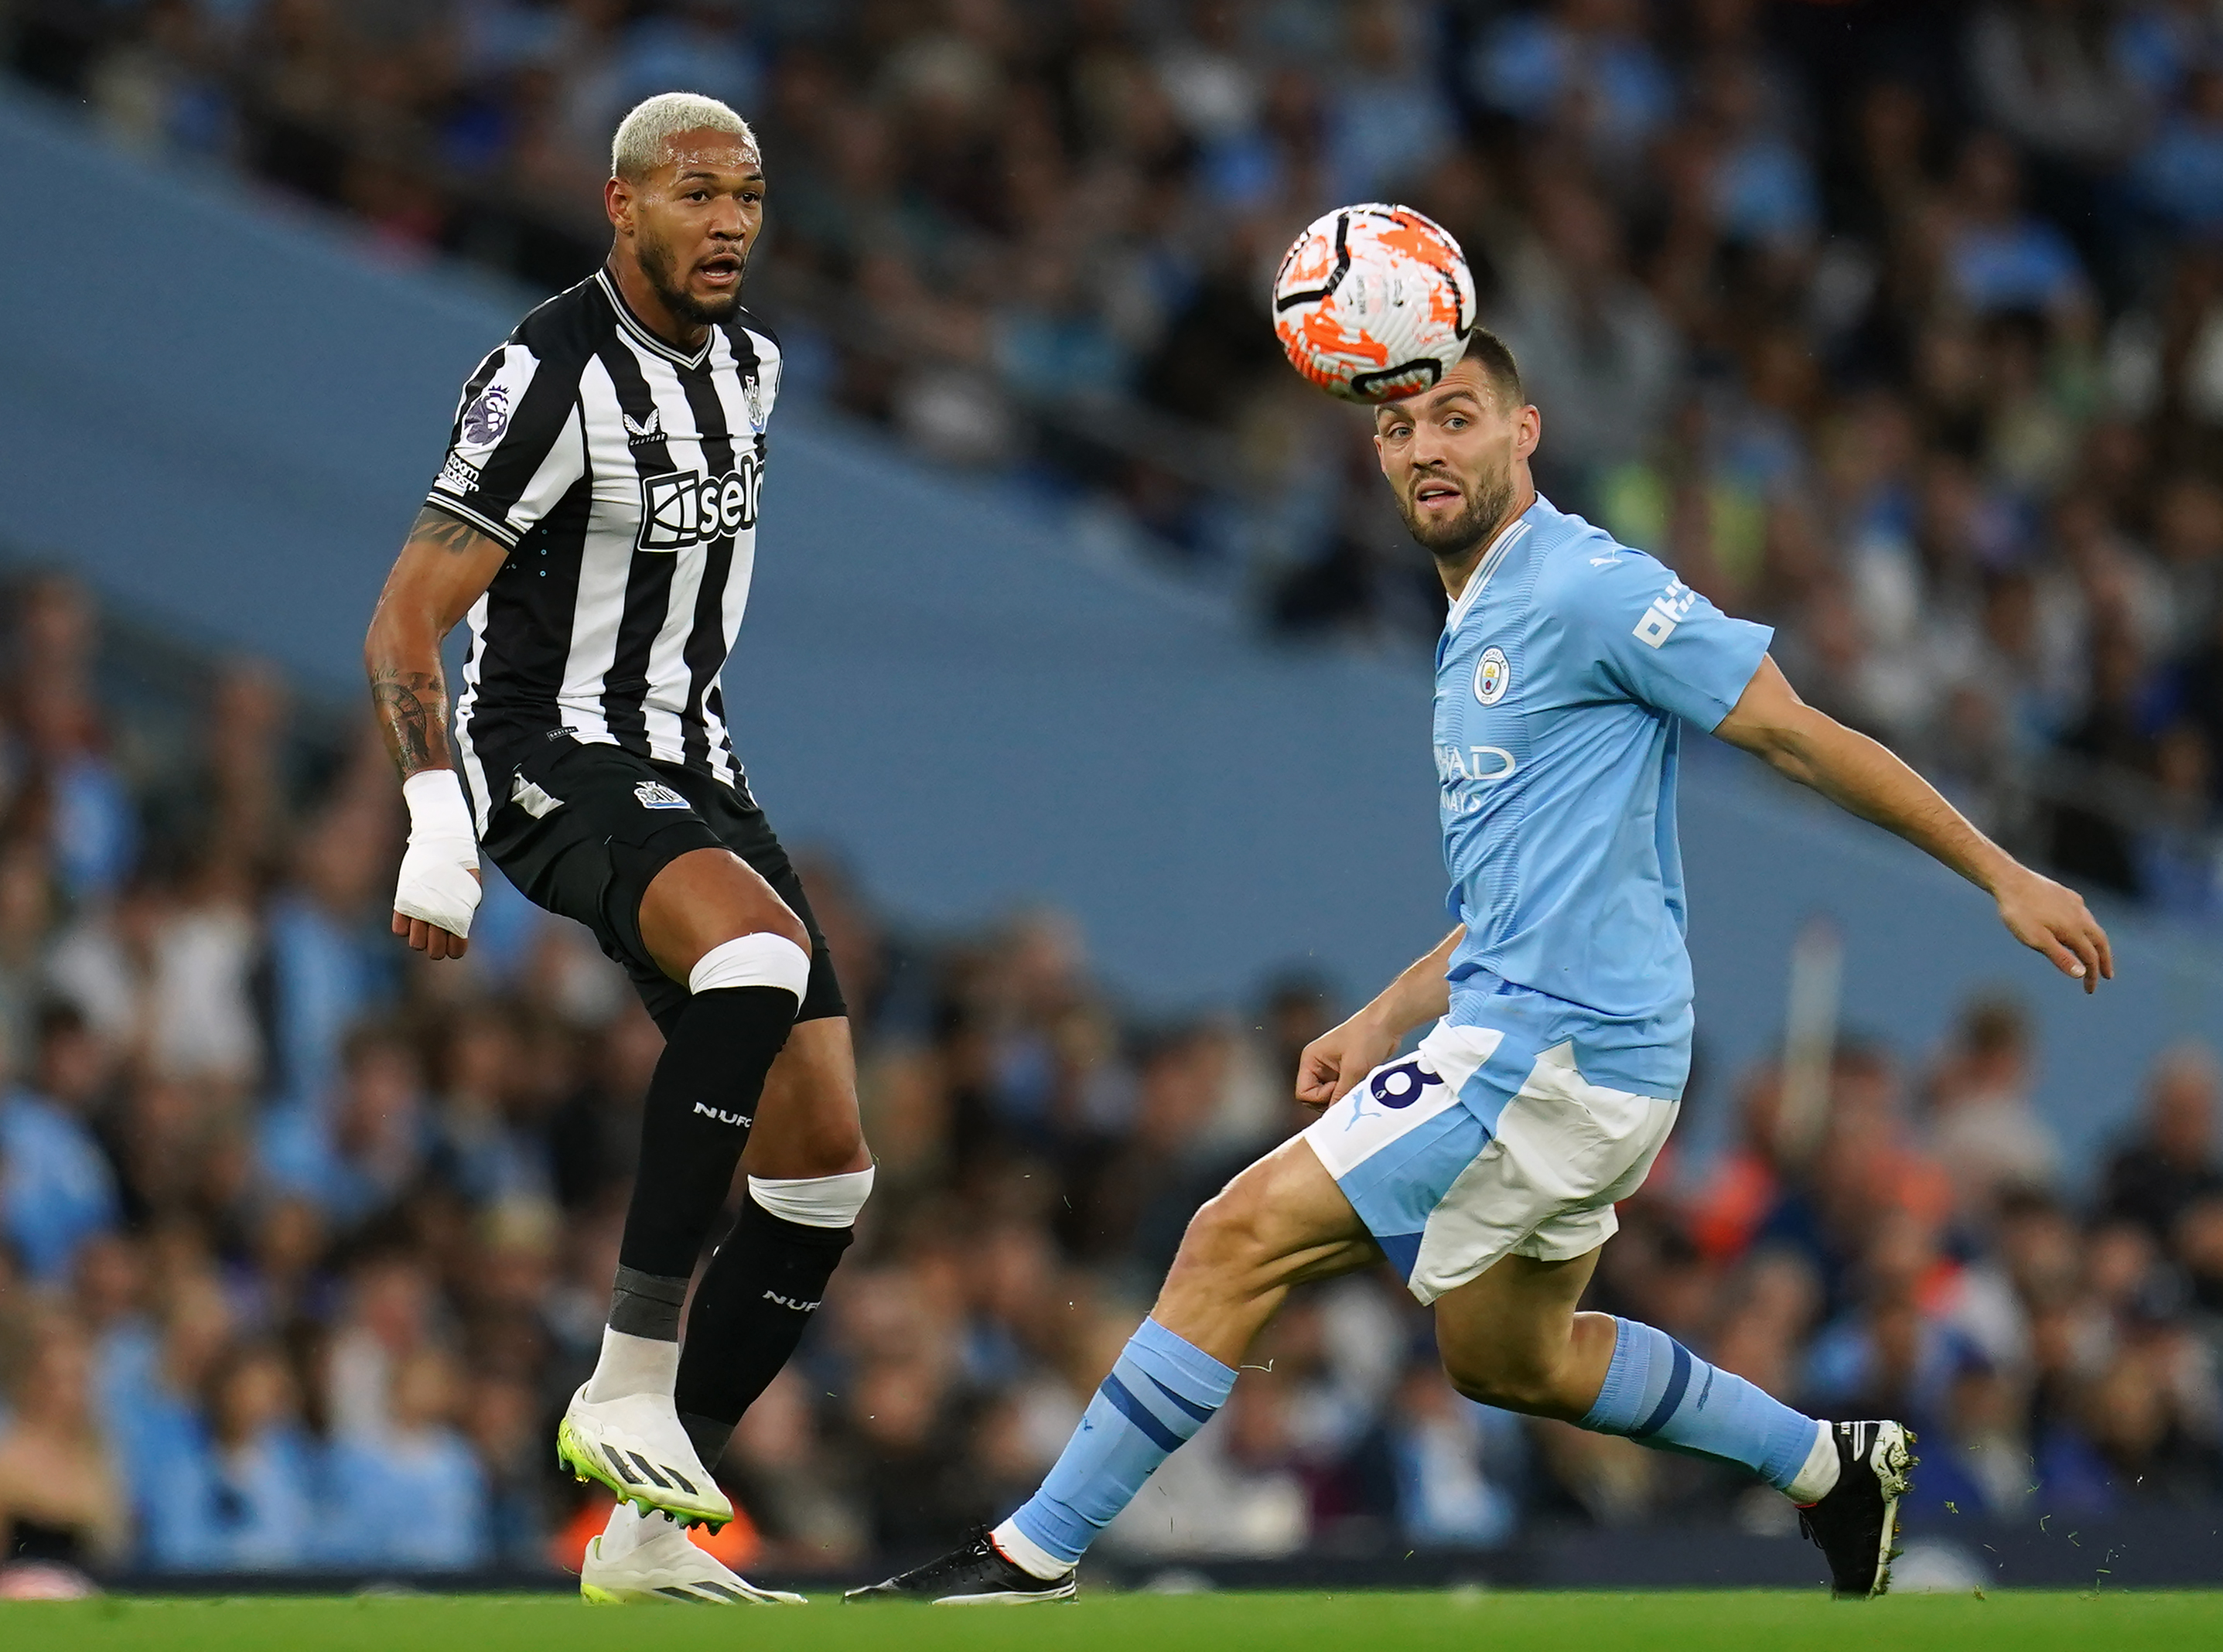 Manchester City - Newcastle 1-0, ACUM, în direct pe Digi Sport 2. ”Cetățenii” rămân în continuare în avantaj